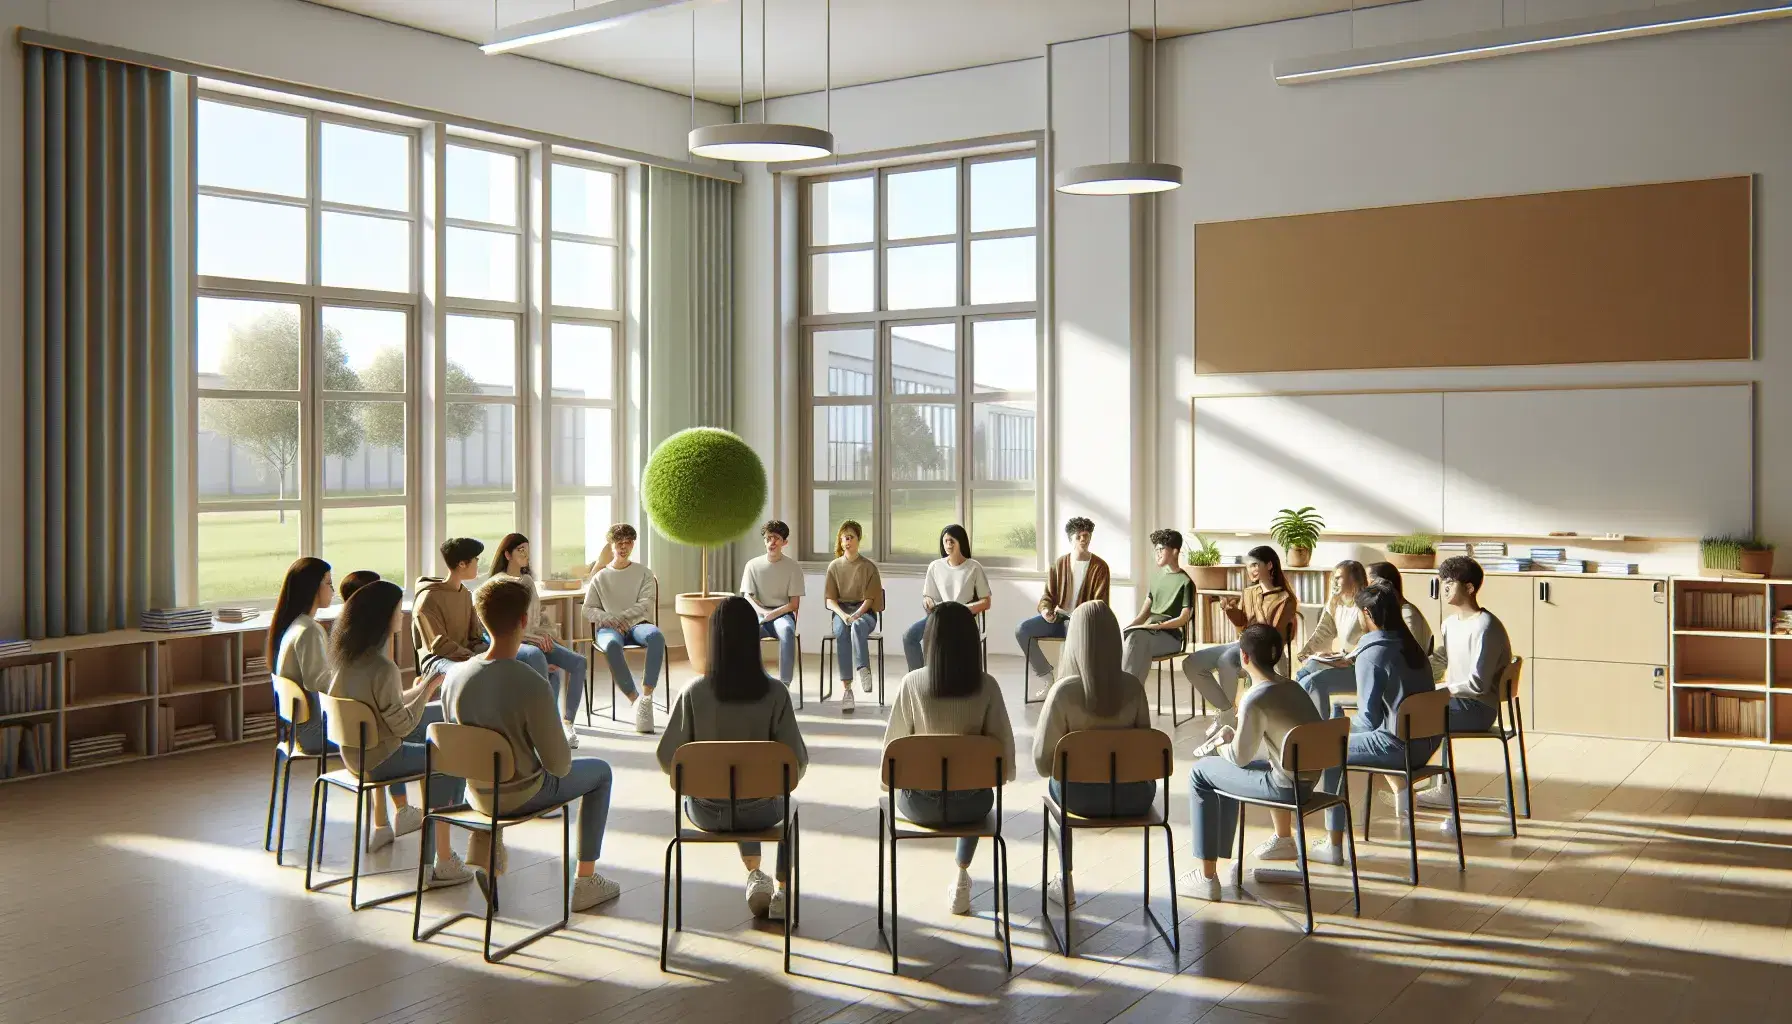 Aula luminosa con paredes claras y estudiantes de diversas edades sentados en círculo en sillas, participando en una discusión activa, con una planta en la esquina y ventanas grandes.